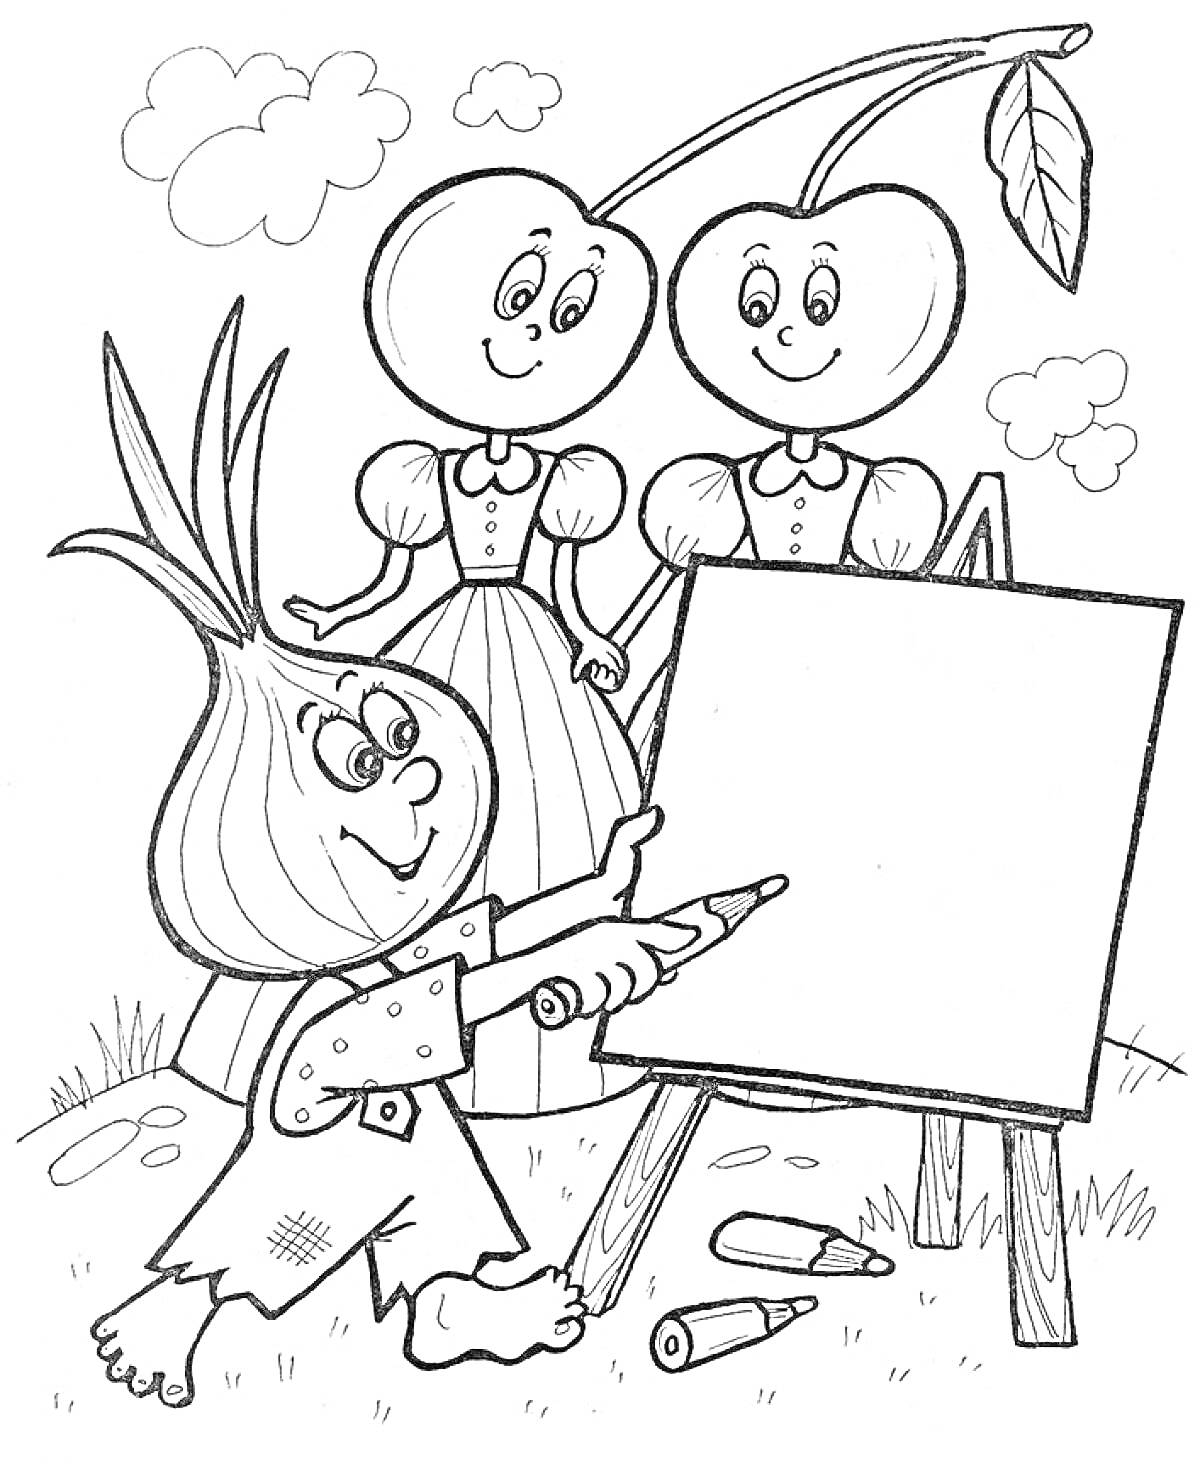 Человечек-луковка рисует на мольберте при наблюдении двух персонажей-вишенок.